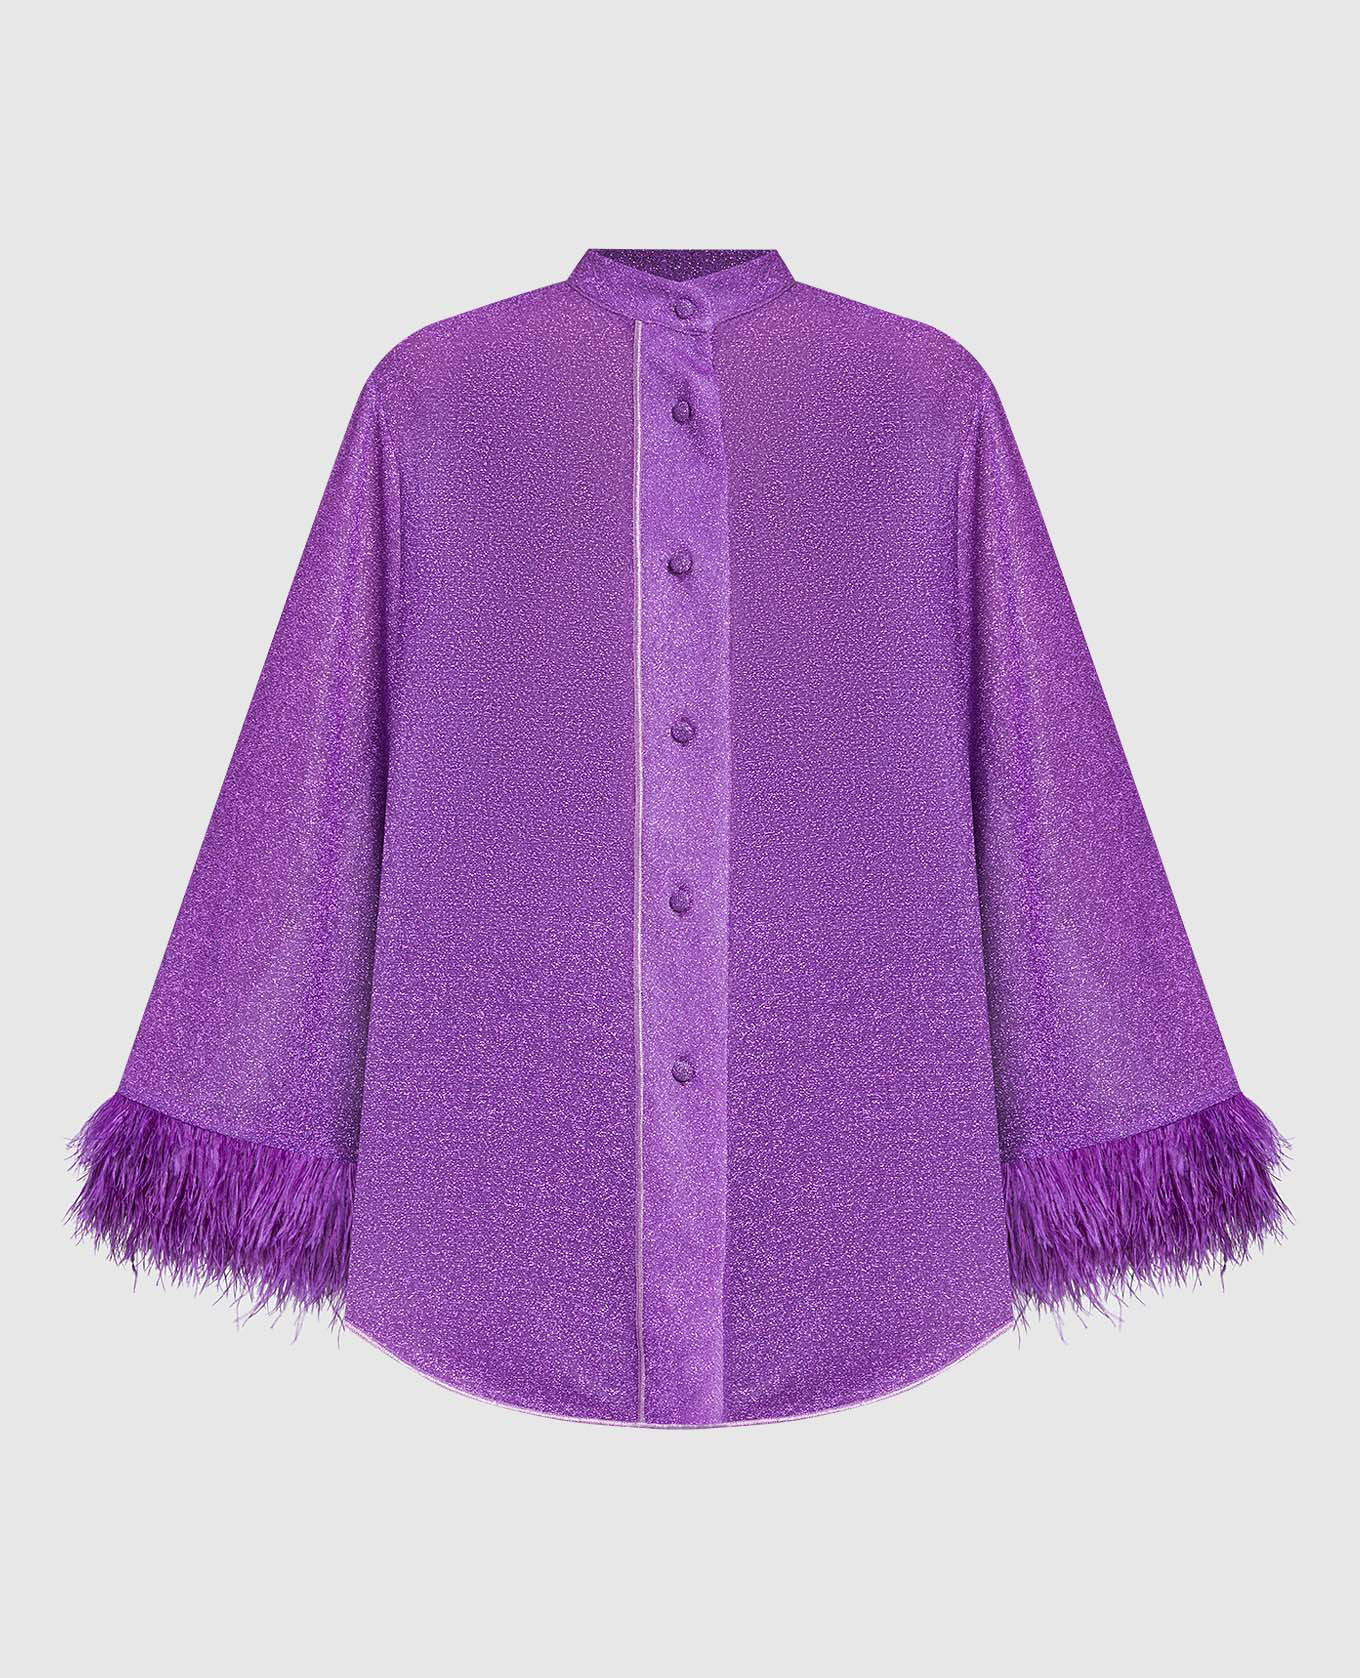 Фиолетовая блуза HS22 Lumiere Plumage с перьями страуса